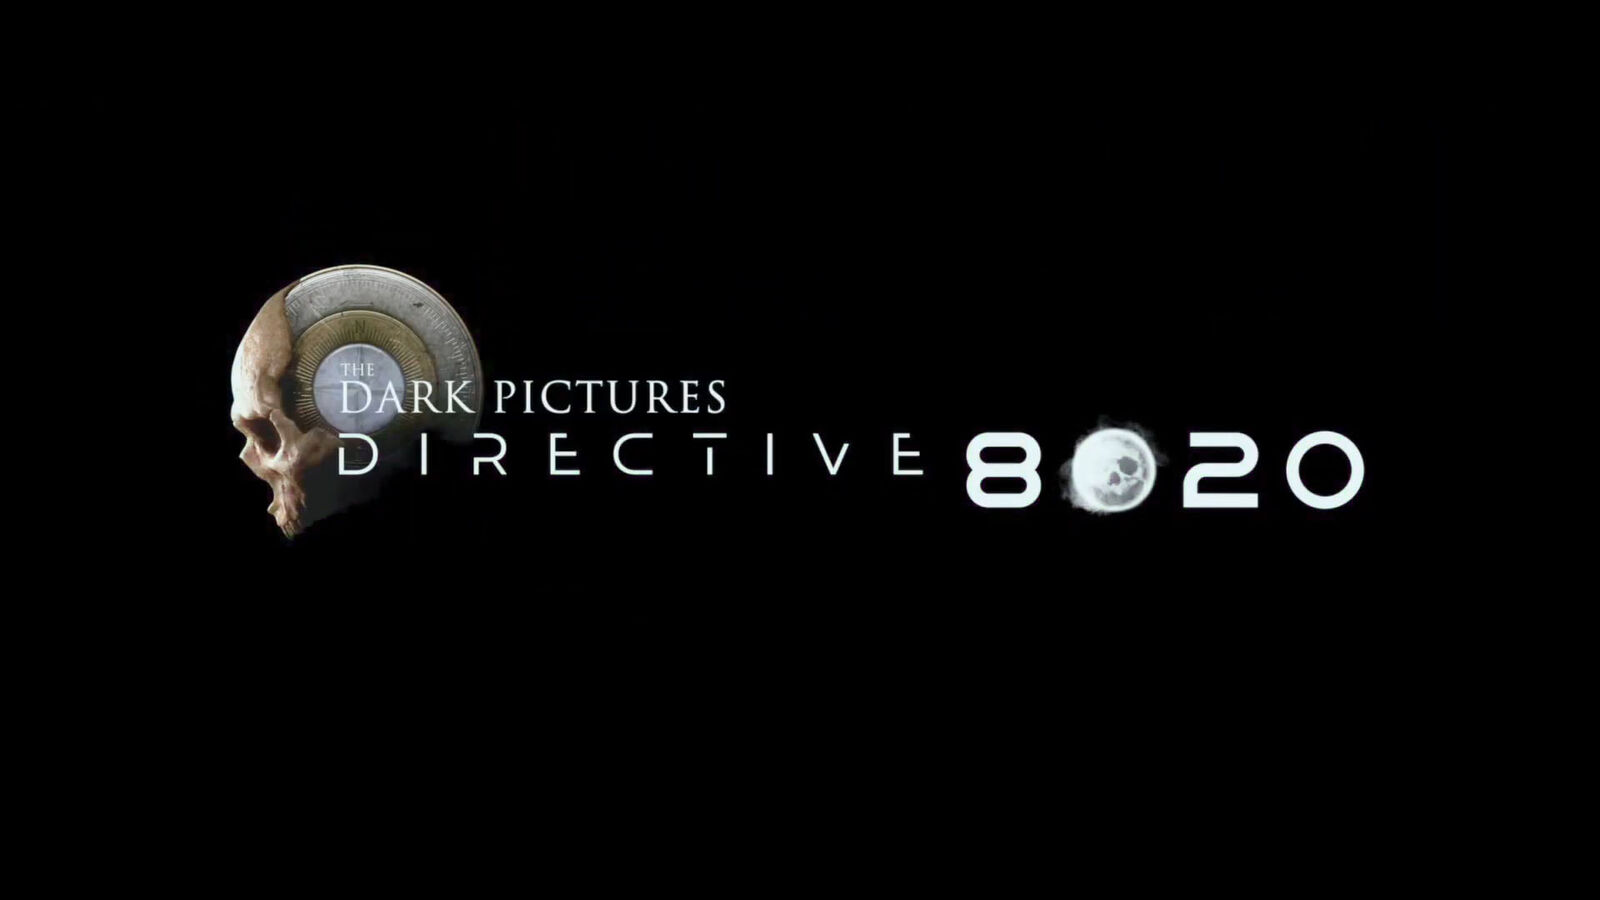 Se ha filtrado un tráiler del próximo juego de The Dark Pictures Anthology, Directiva 8020